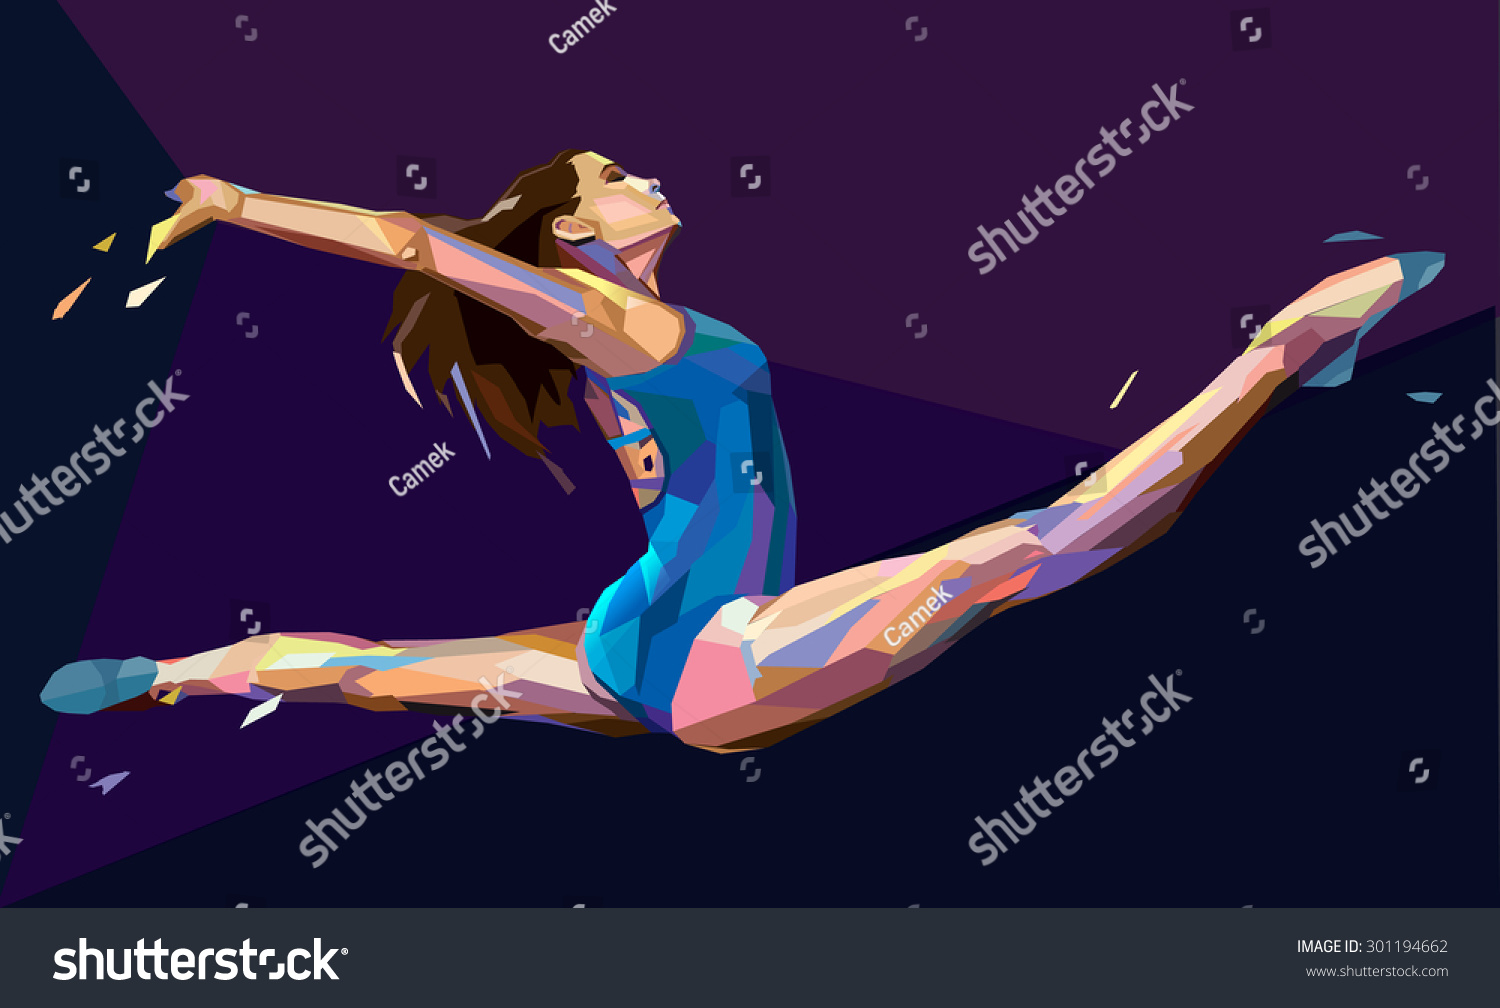 Нарисованная гимнастка в прыжке